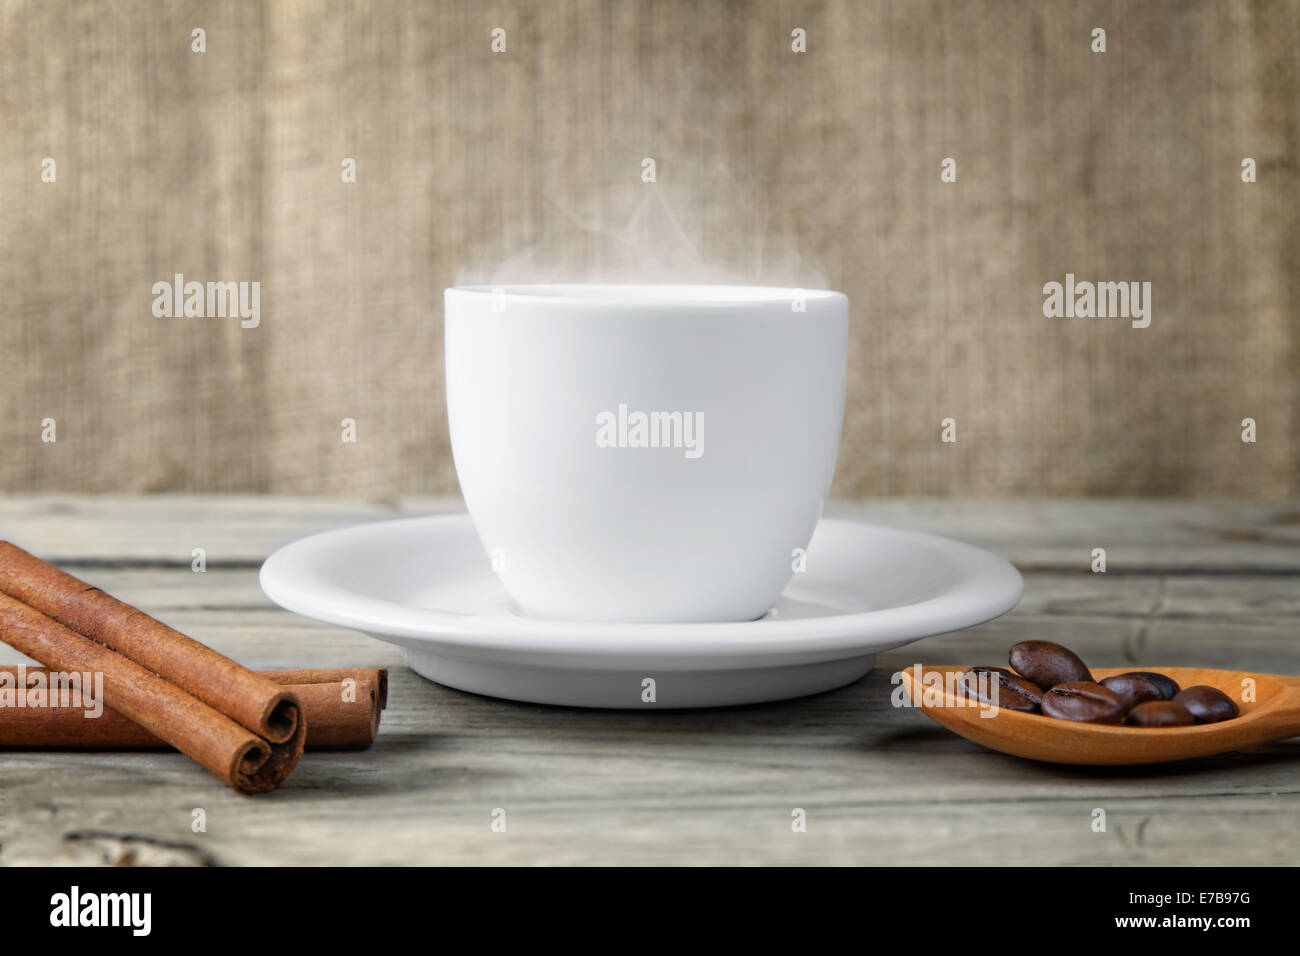 La vapeur chaude tasse de café sur la table en bois Banque D'Images